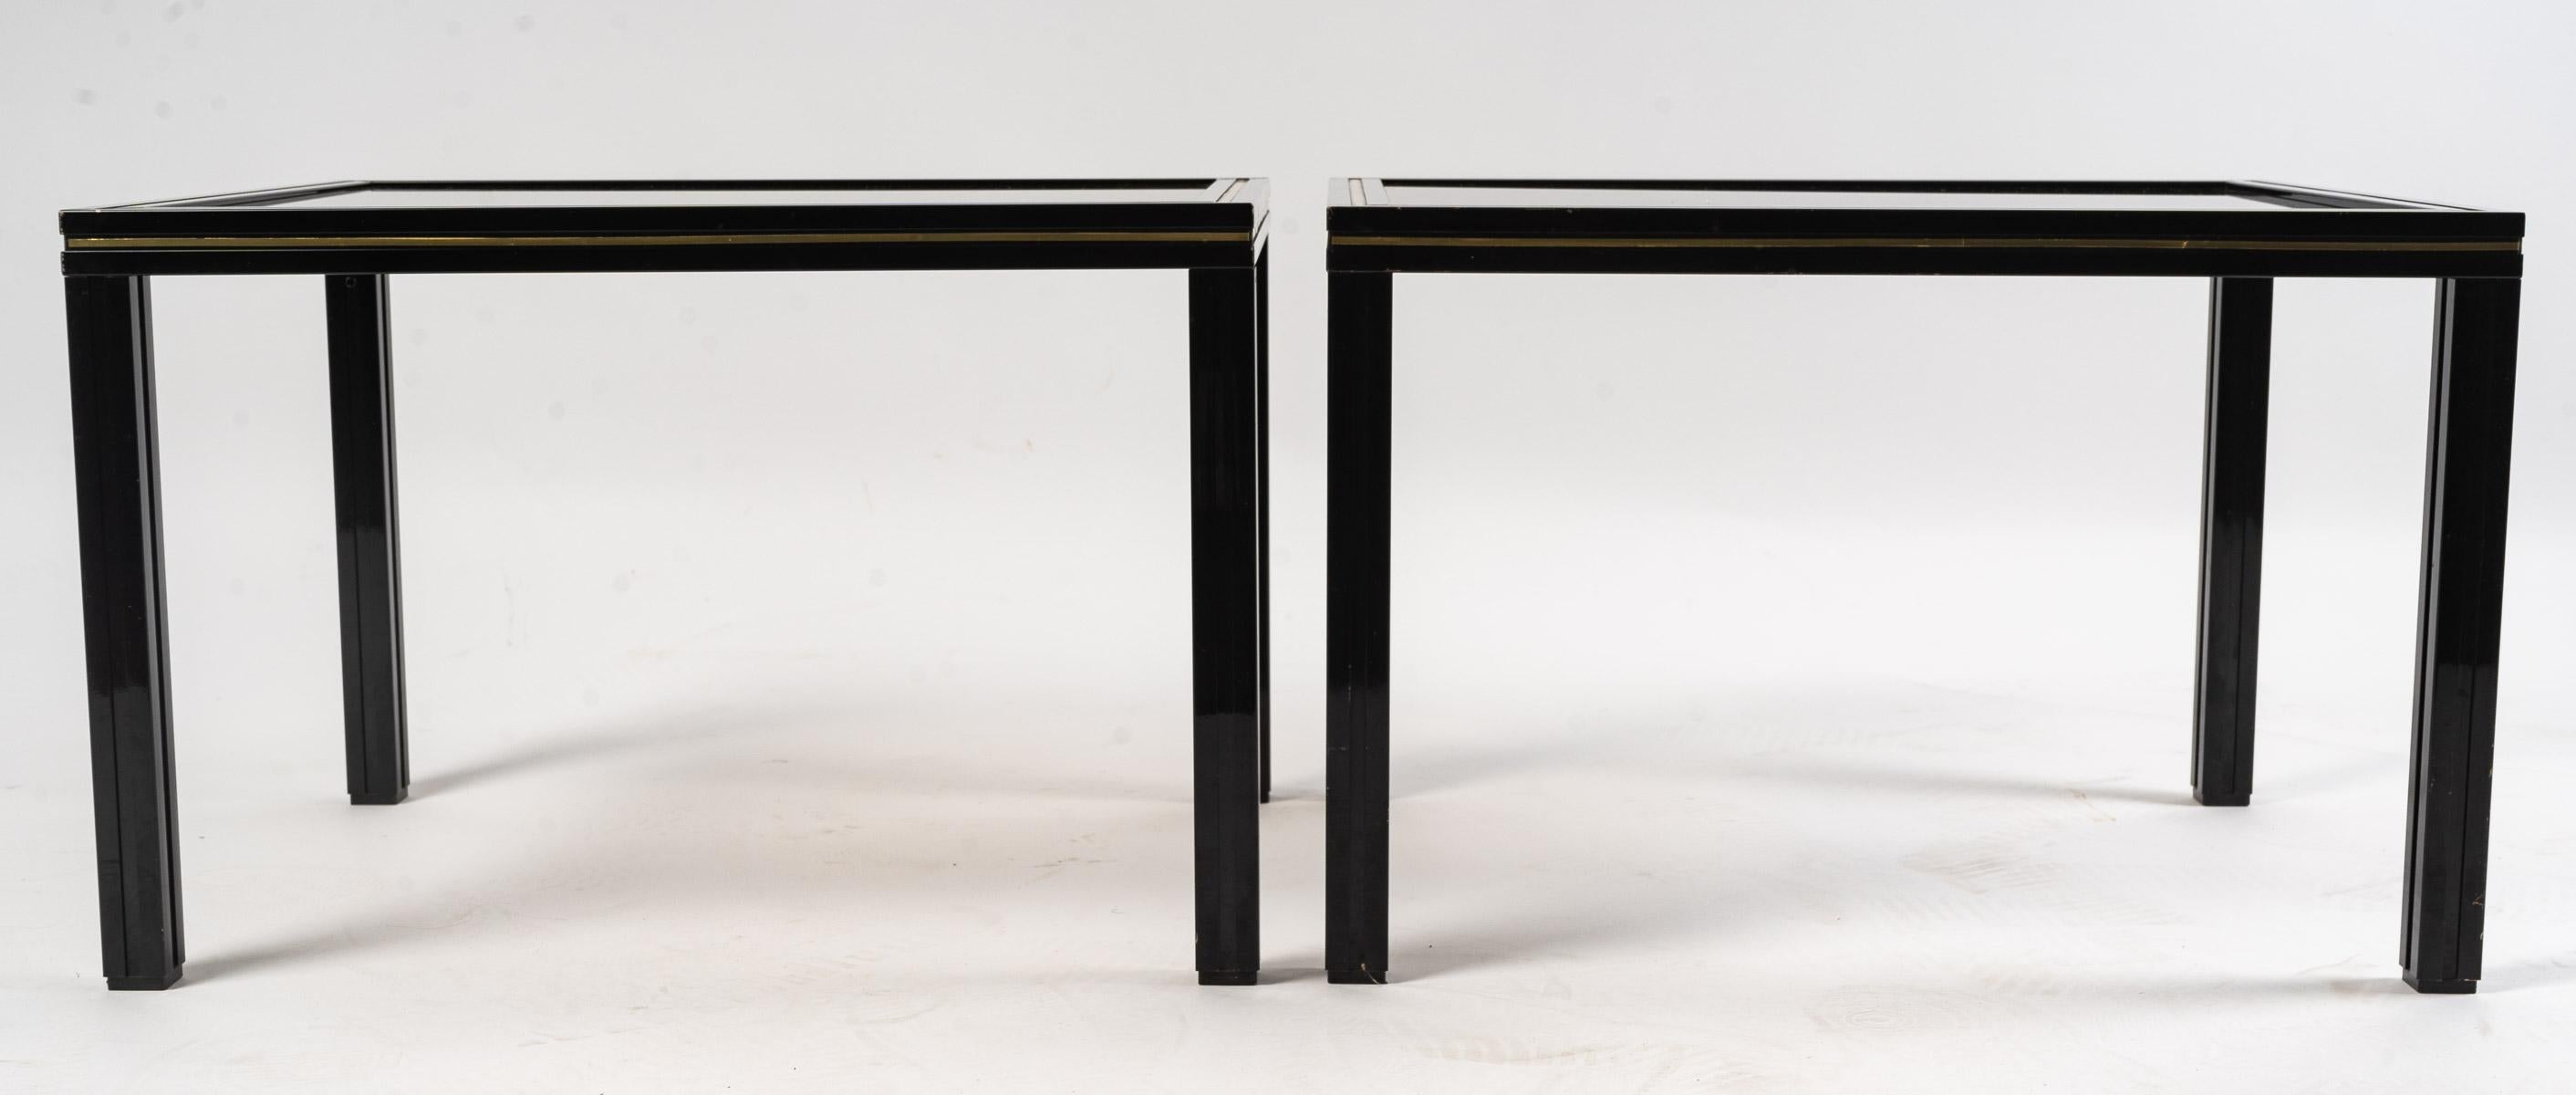 Pair of tables in the style of Pierre Vandel, 1970
Pair of side tables, end of sofa, in the style of Pierre Vandel, 1970
H: 34 cm, W: 40.5 cm, D: 50 cm
ref SM0694